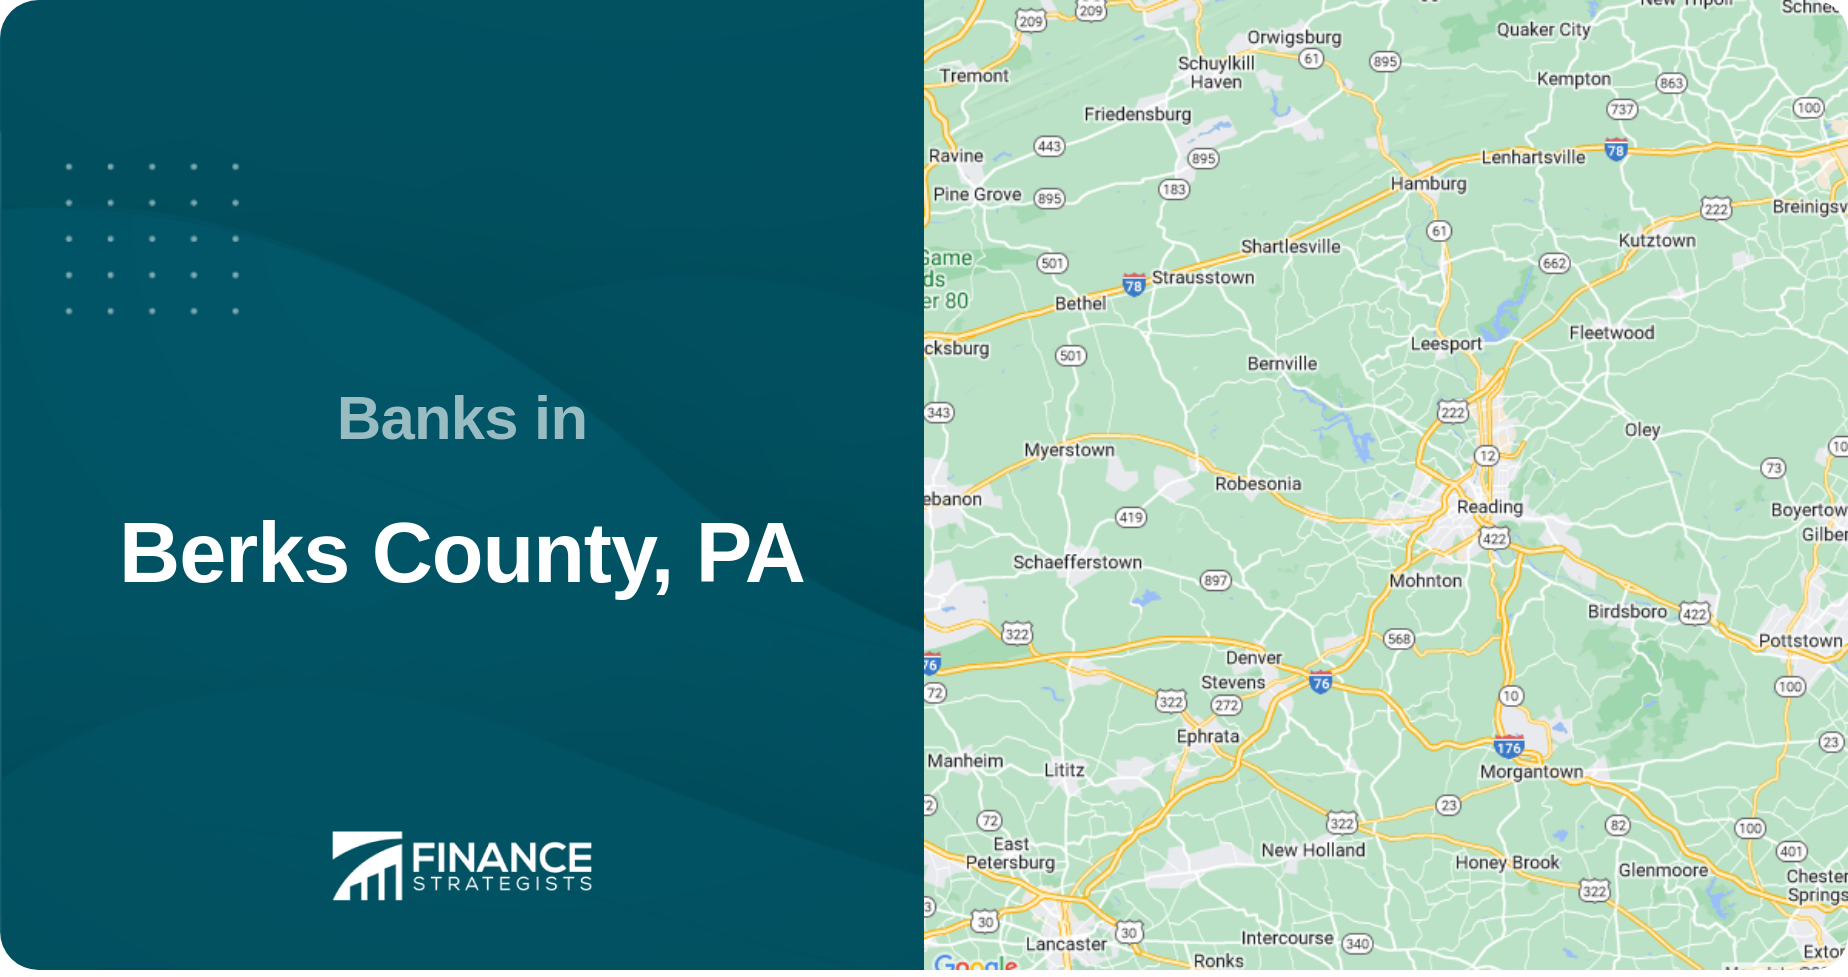 Banks in Berks County, PA